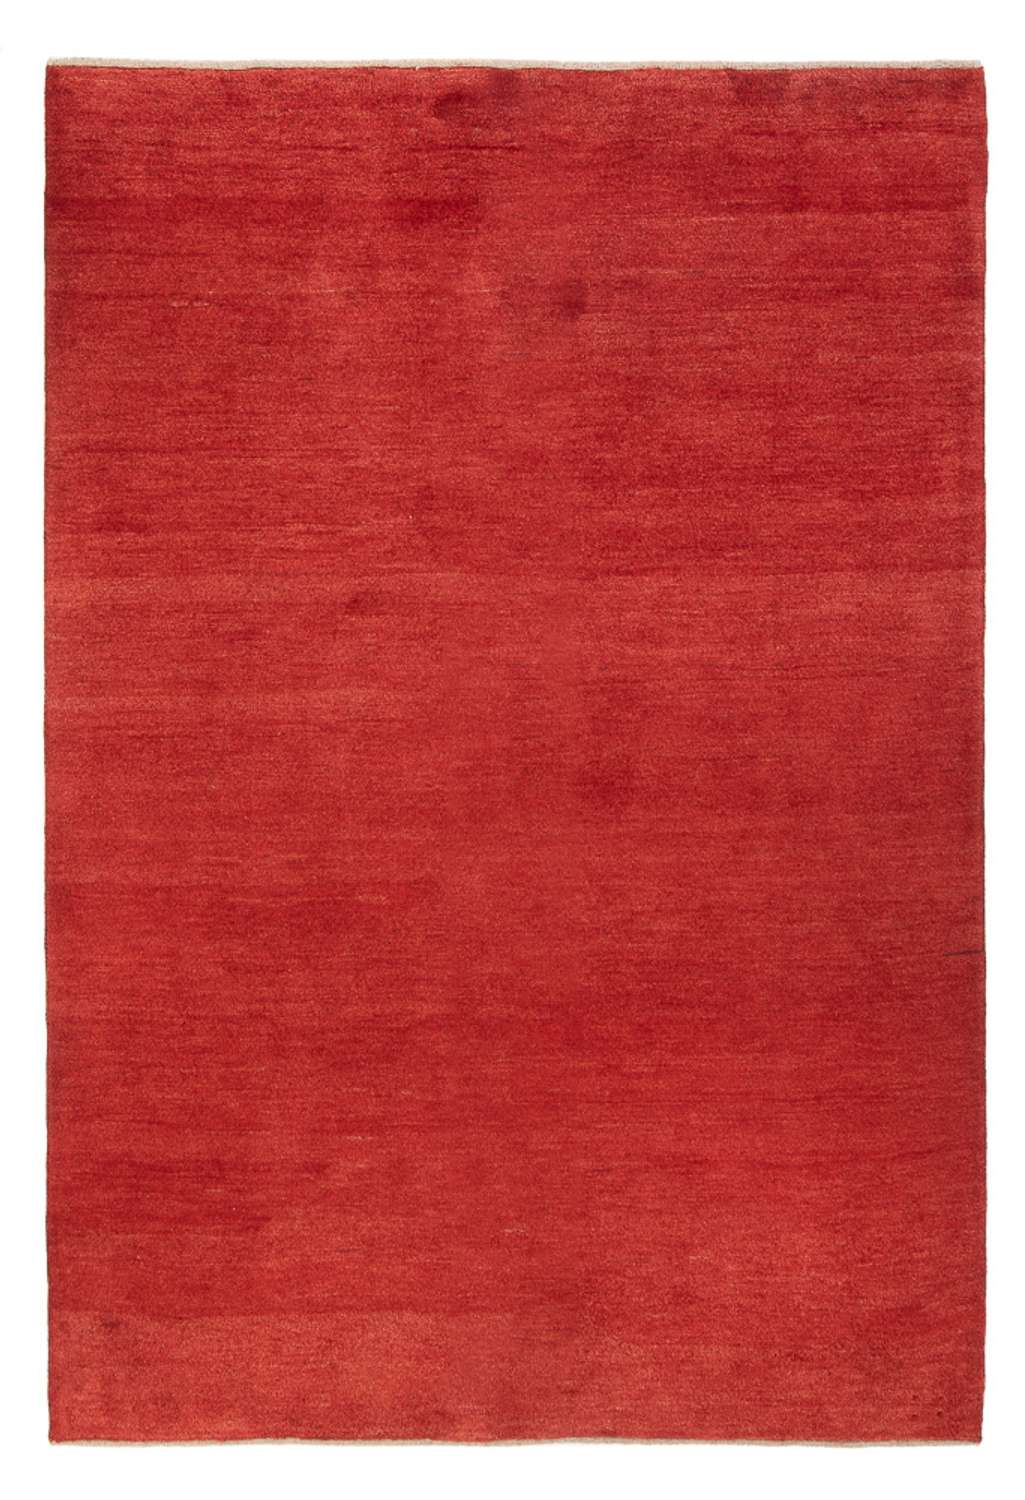 Gabbeh tapijt - Perzisch - 228 x 161 cm - rood